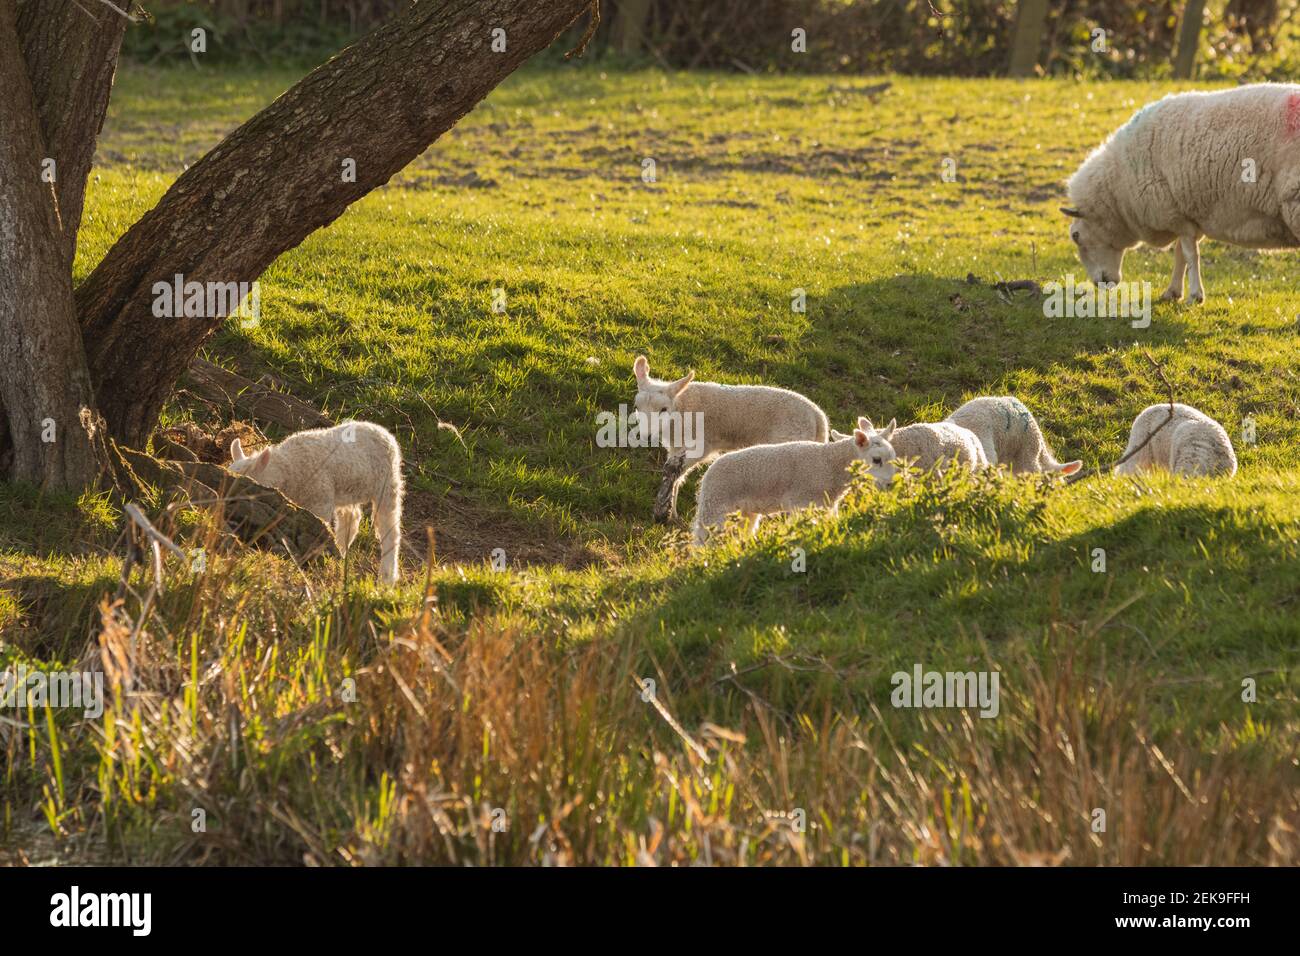 Junge neugeborene Lämmer (ovis aries) spielen im Frühjahr in Mid Wales Farming Field außerhalb Welshpool, Powys. Nutztiere Vieh. Stockfoto